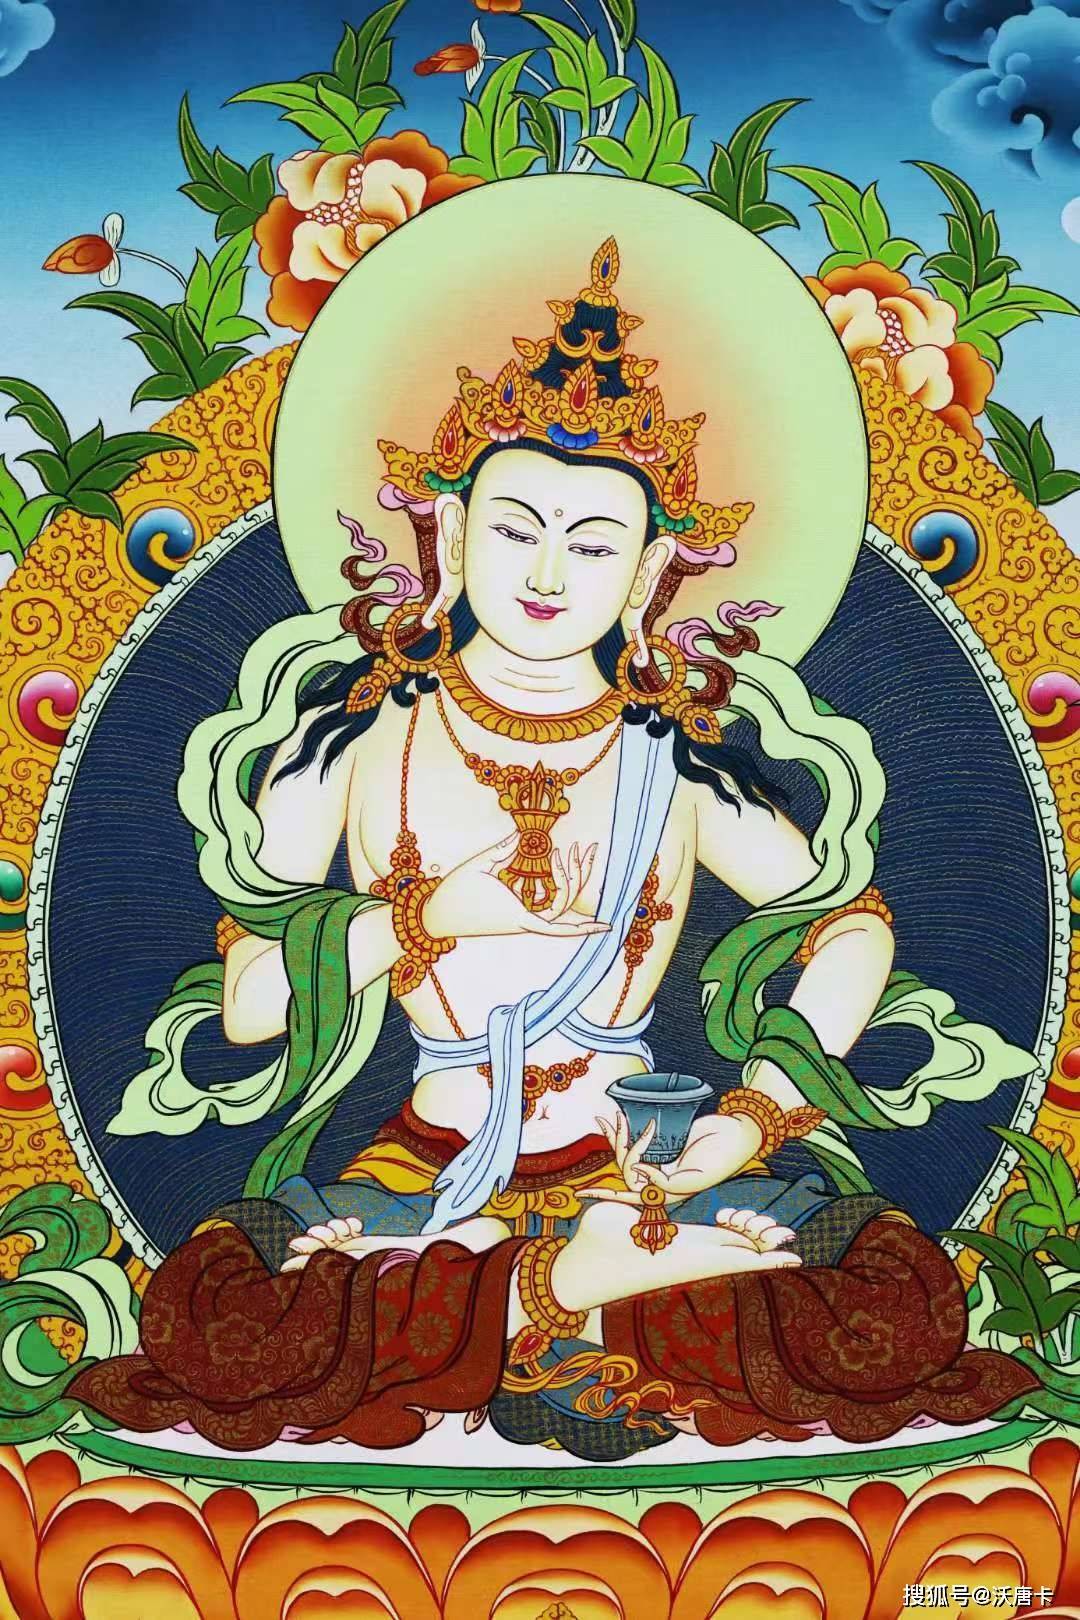 萨埵唐卡:藏巴拉沃波作为时轮金刚本续中非常重要的财神系列护法神,他